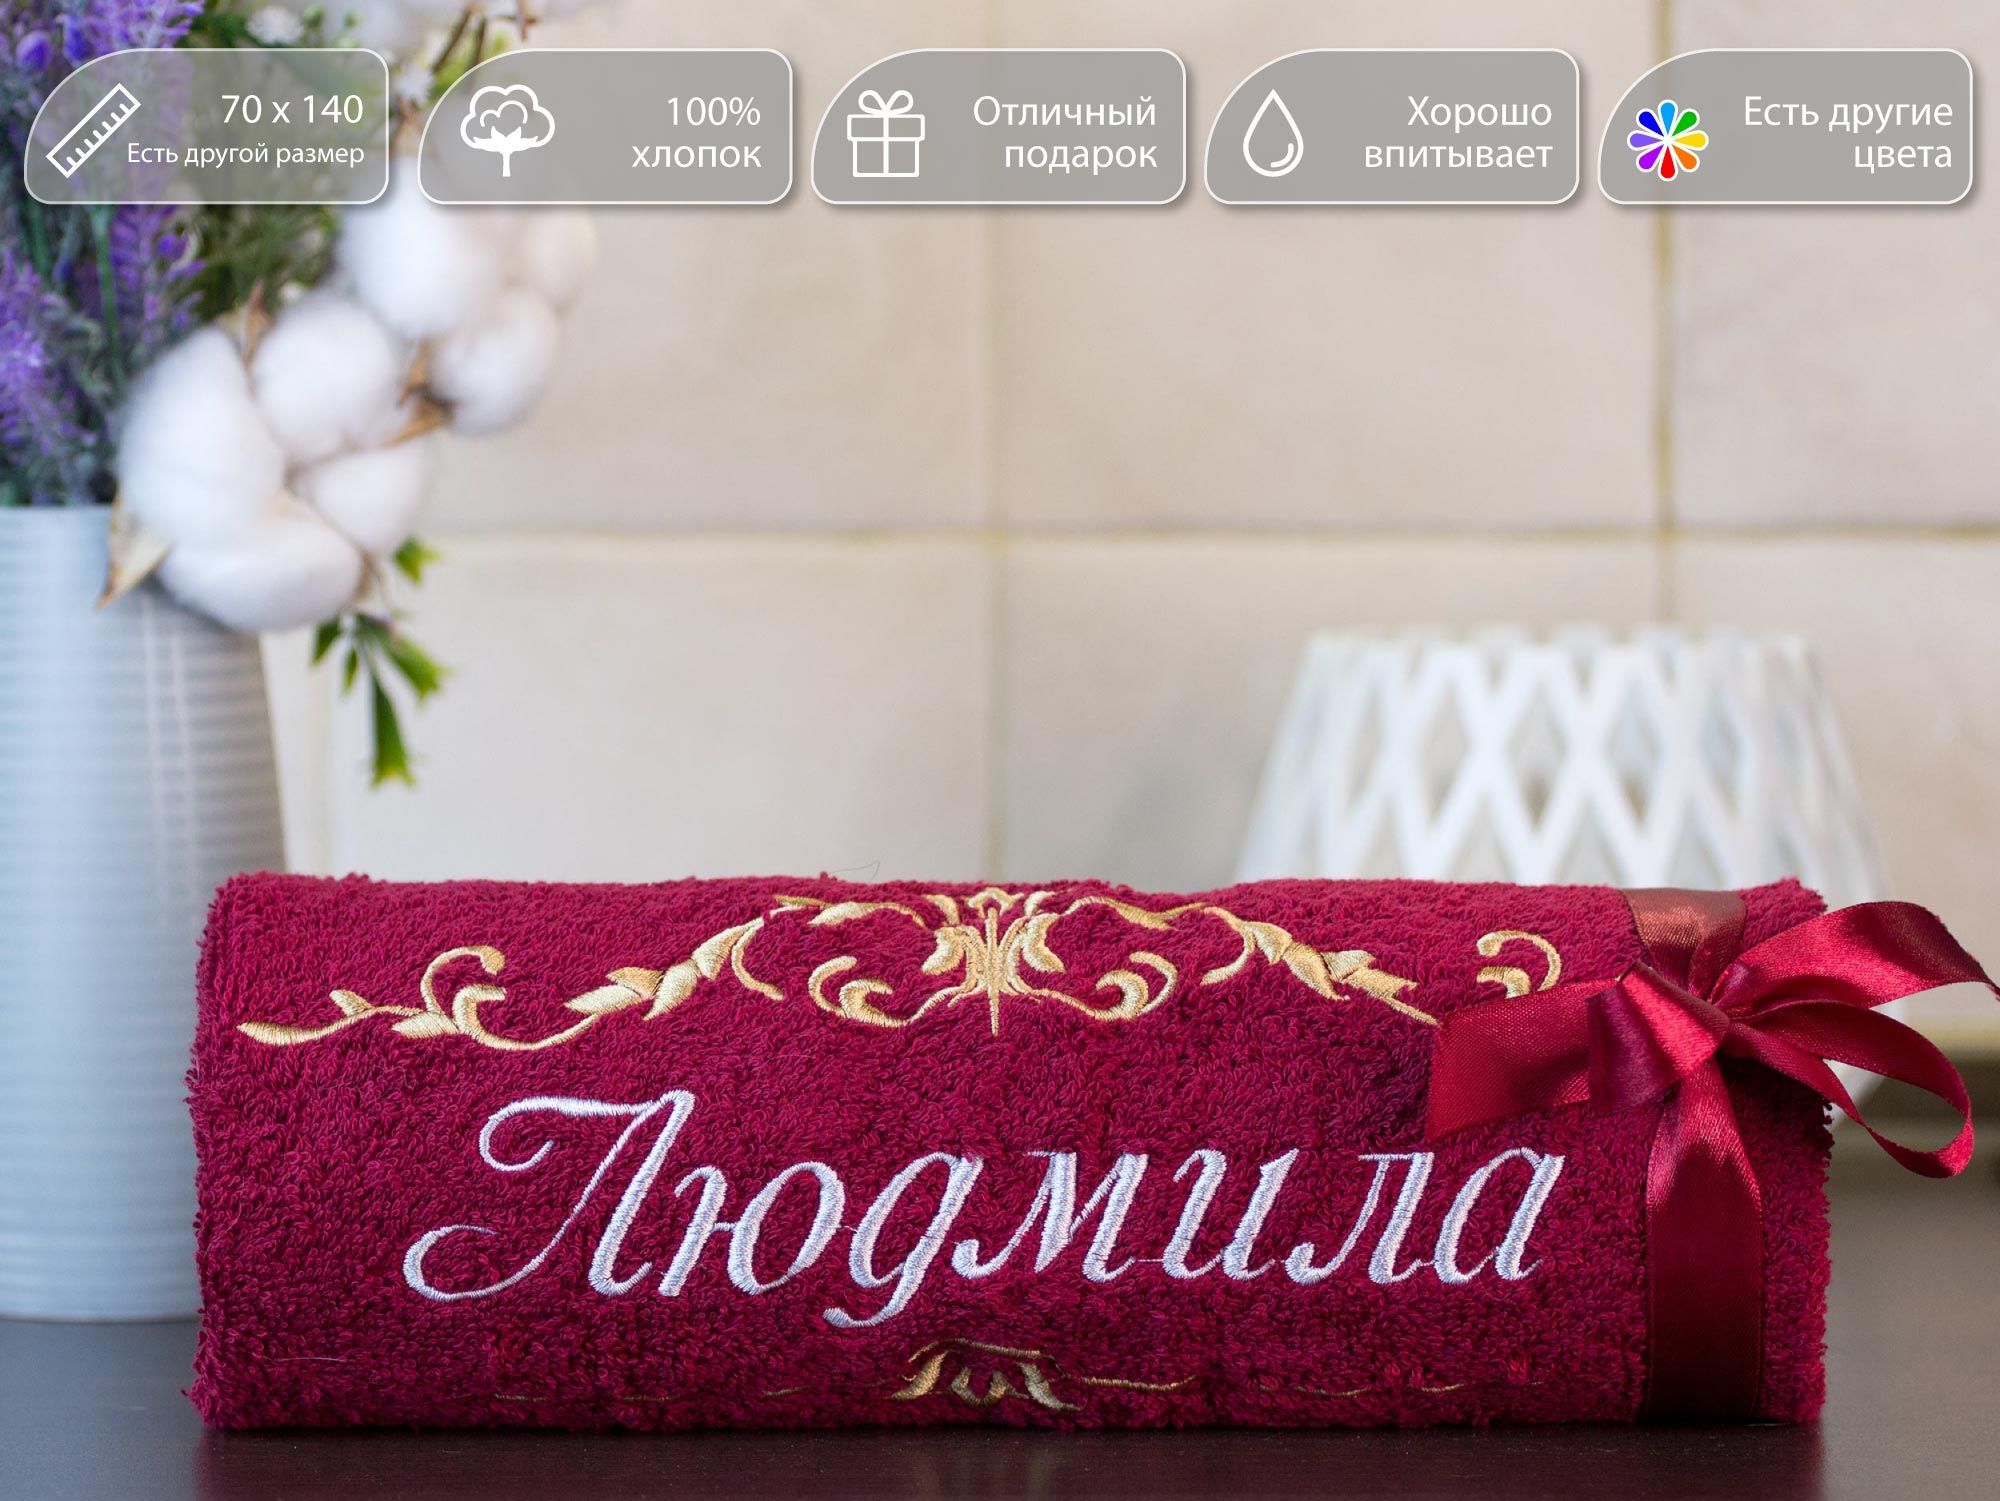 Полотенце подарочное, махровое банное с вышивкой имени Людмила и узором, 70x140 см, 100% хлопок